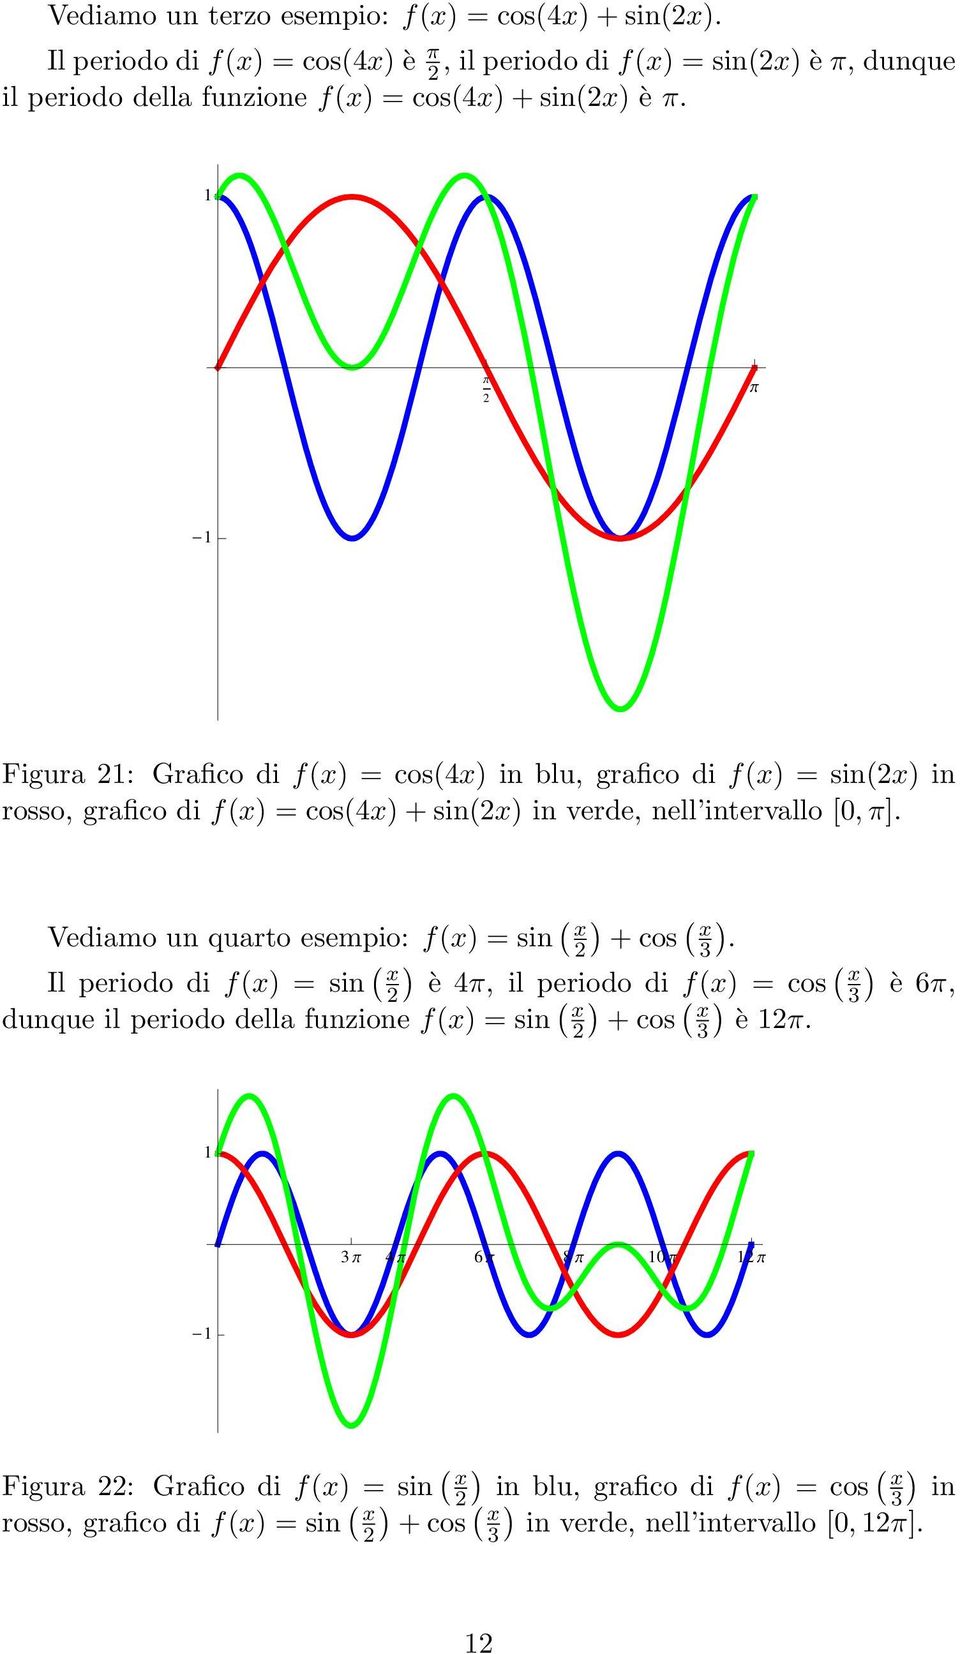 Figura : Grafico di f(x) = cos(4x) in blu, grafico di f(x) = sin(x) in rosso, grafico di f(x) = cos(4x) + sin(x) in verde, nell intervallo [0, π].